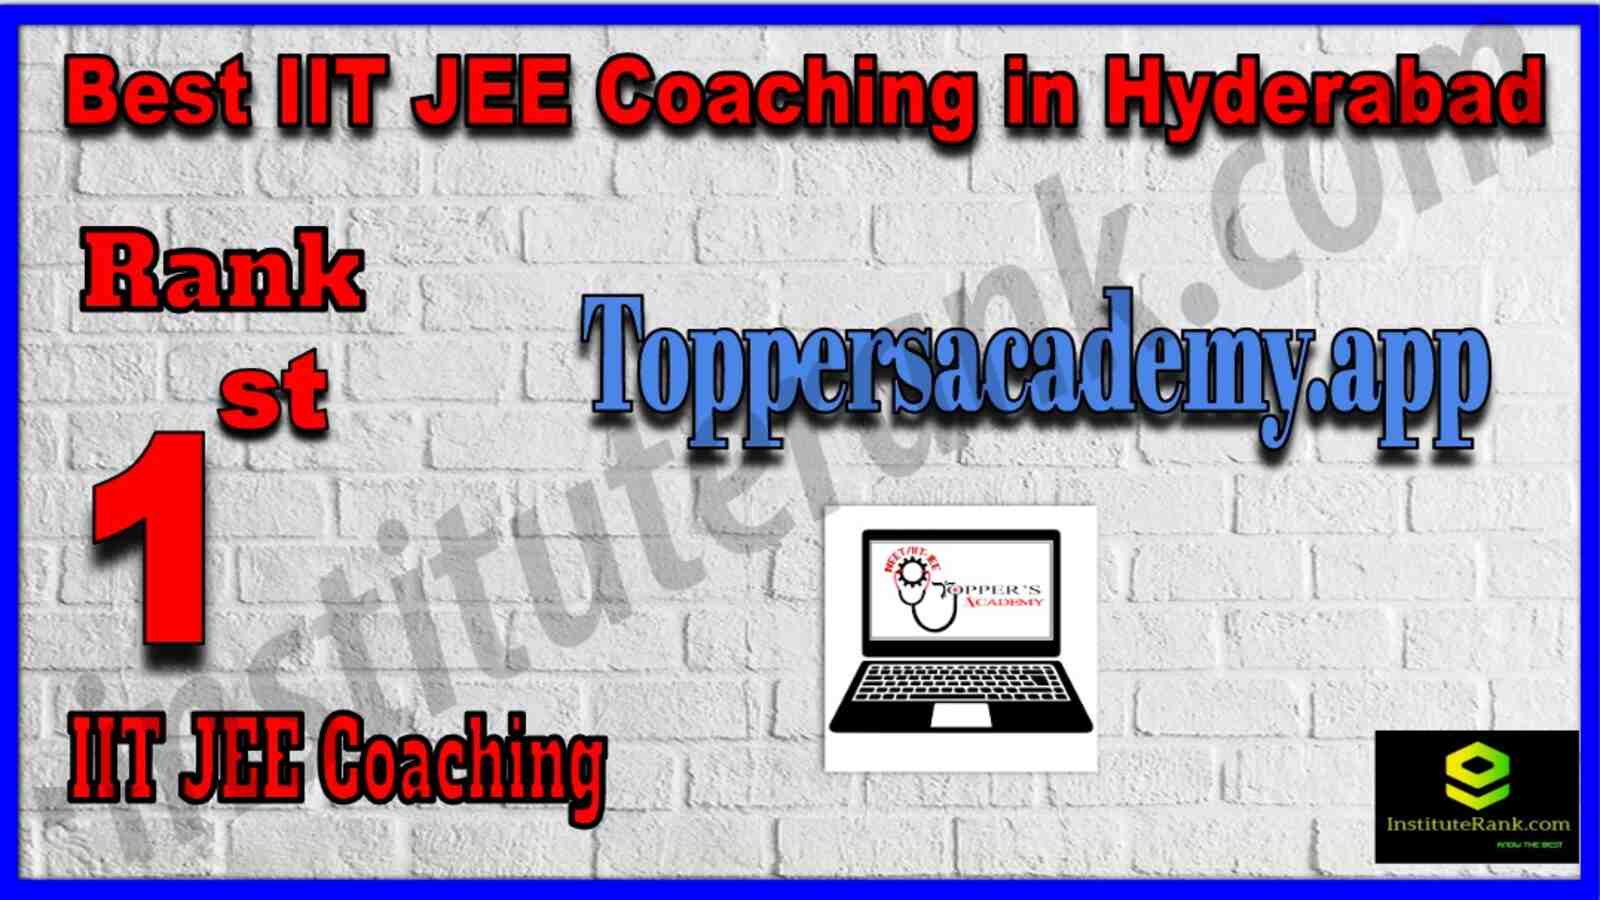 Rank 1 Best IIT JEE Coaching in hyderabad